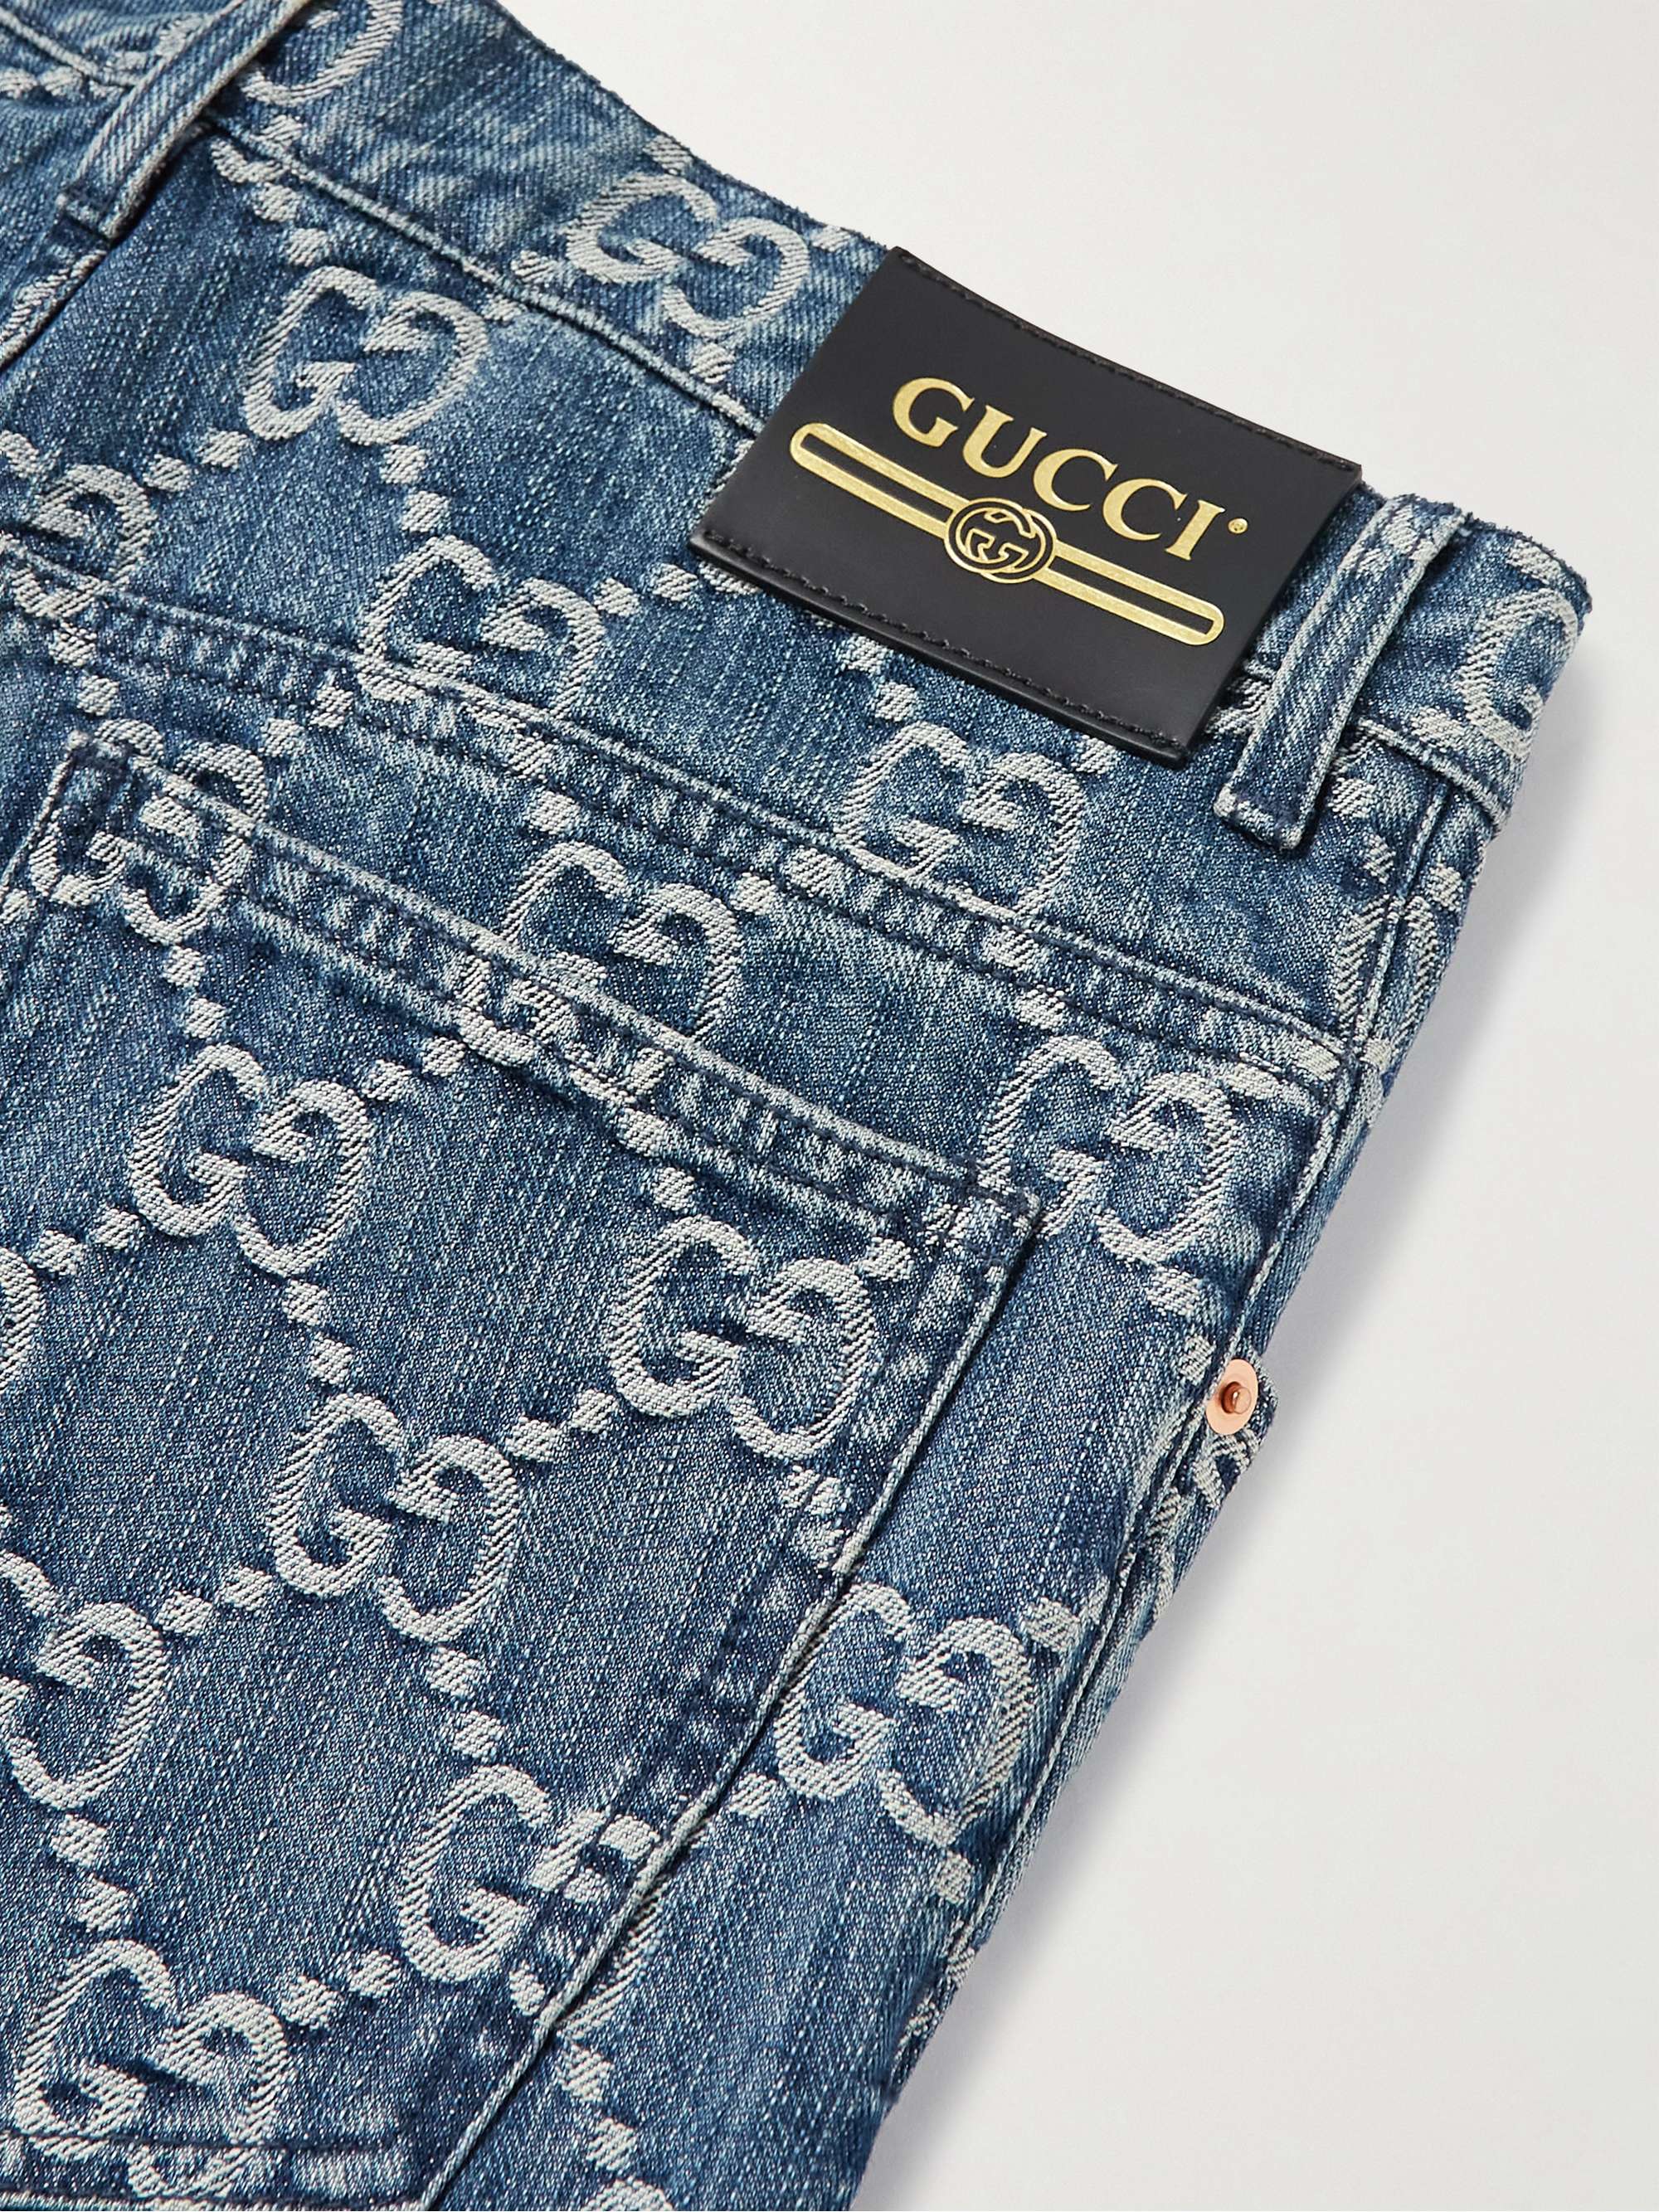 GUCCI Slim-Fit Tapered Logo-Jacquard Jeans for Men | MR PORTER